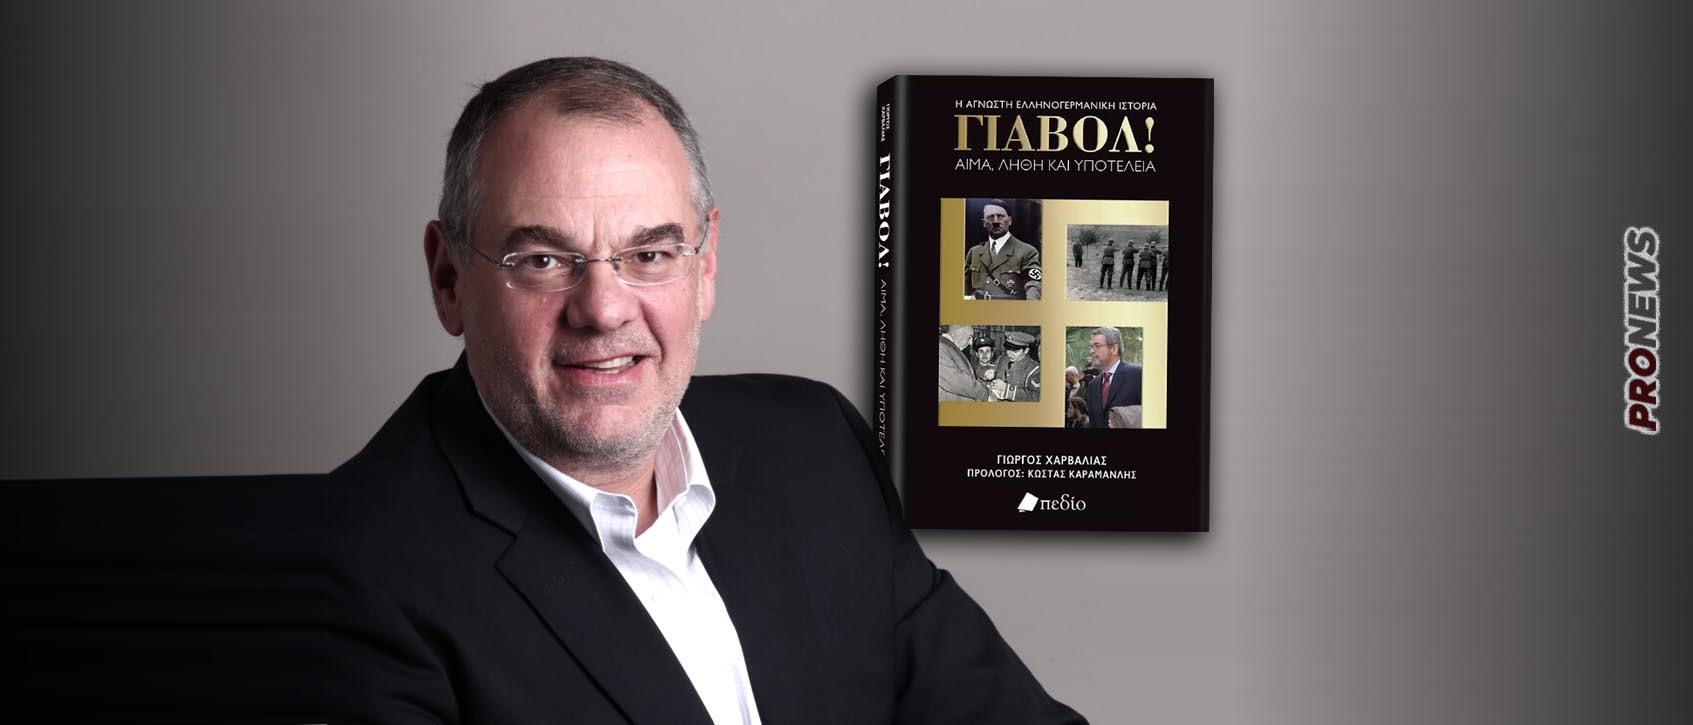 «Γιαβόλ!»: Το βιβλίο του Γιώργου Χαρβαλιά για τις ελληνογερμανικές σχέσεις